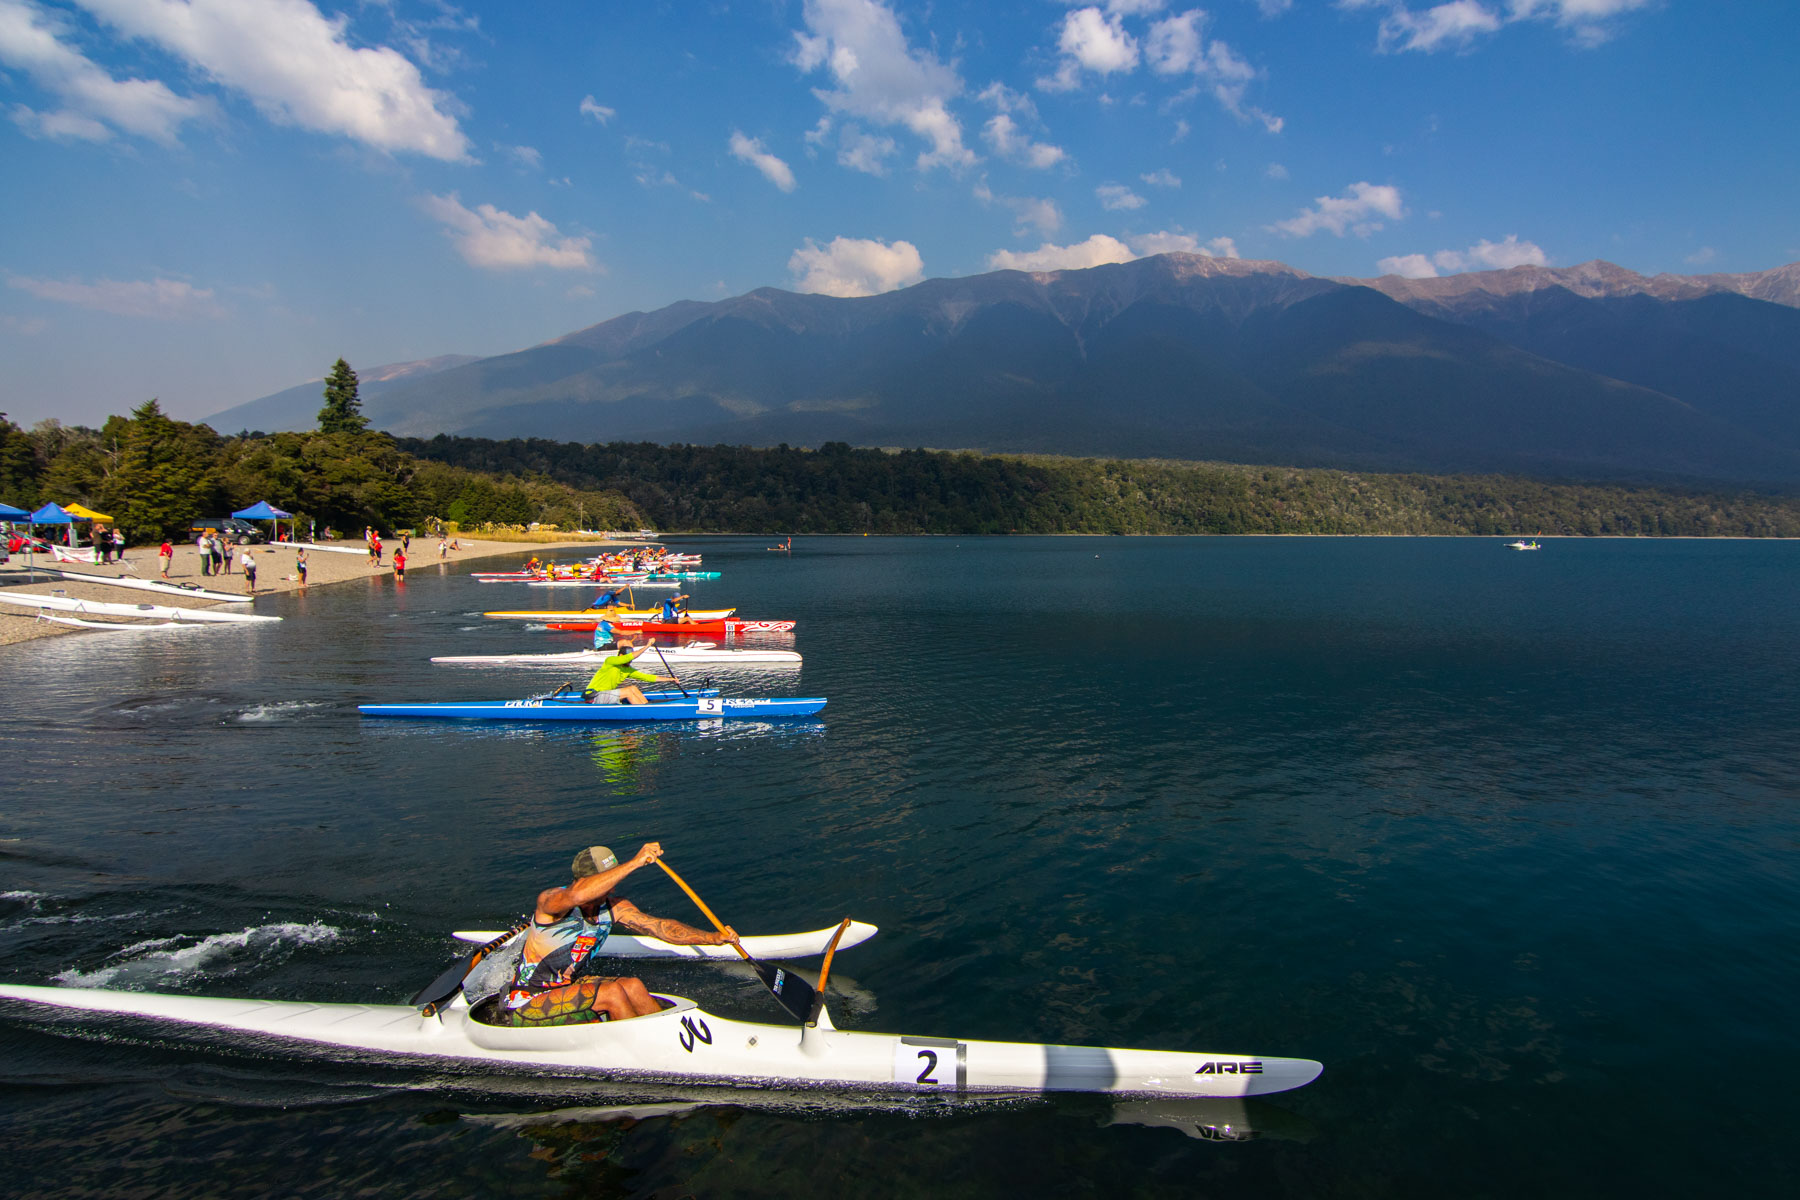 Une dizaine de canots modernes et colorés débutent une course depuis le rivage d’un lac aux pieds des montagnes.